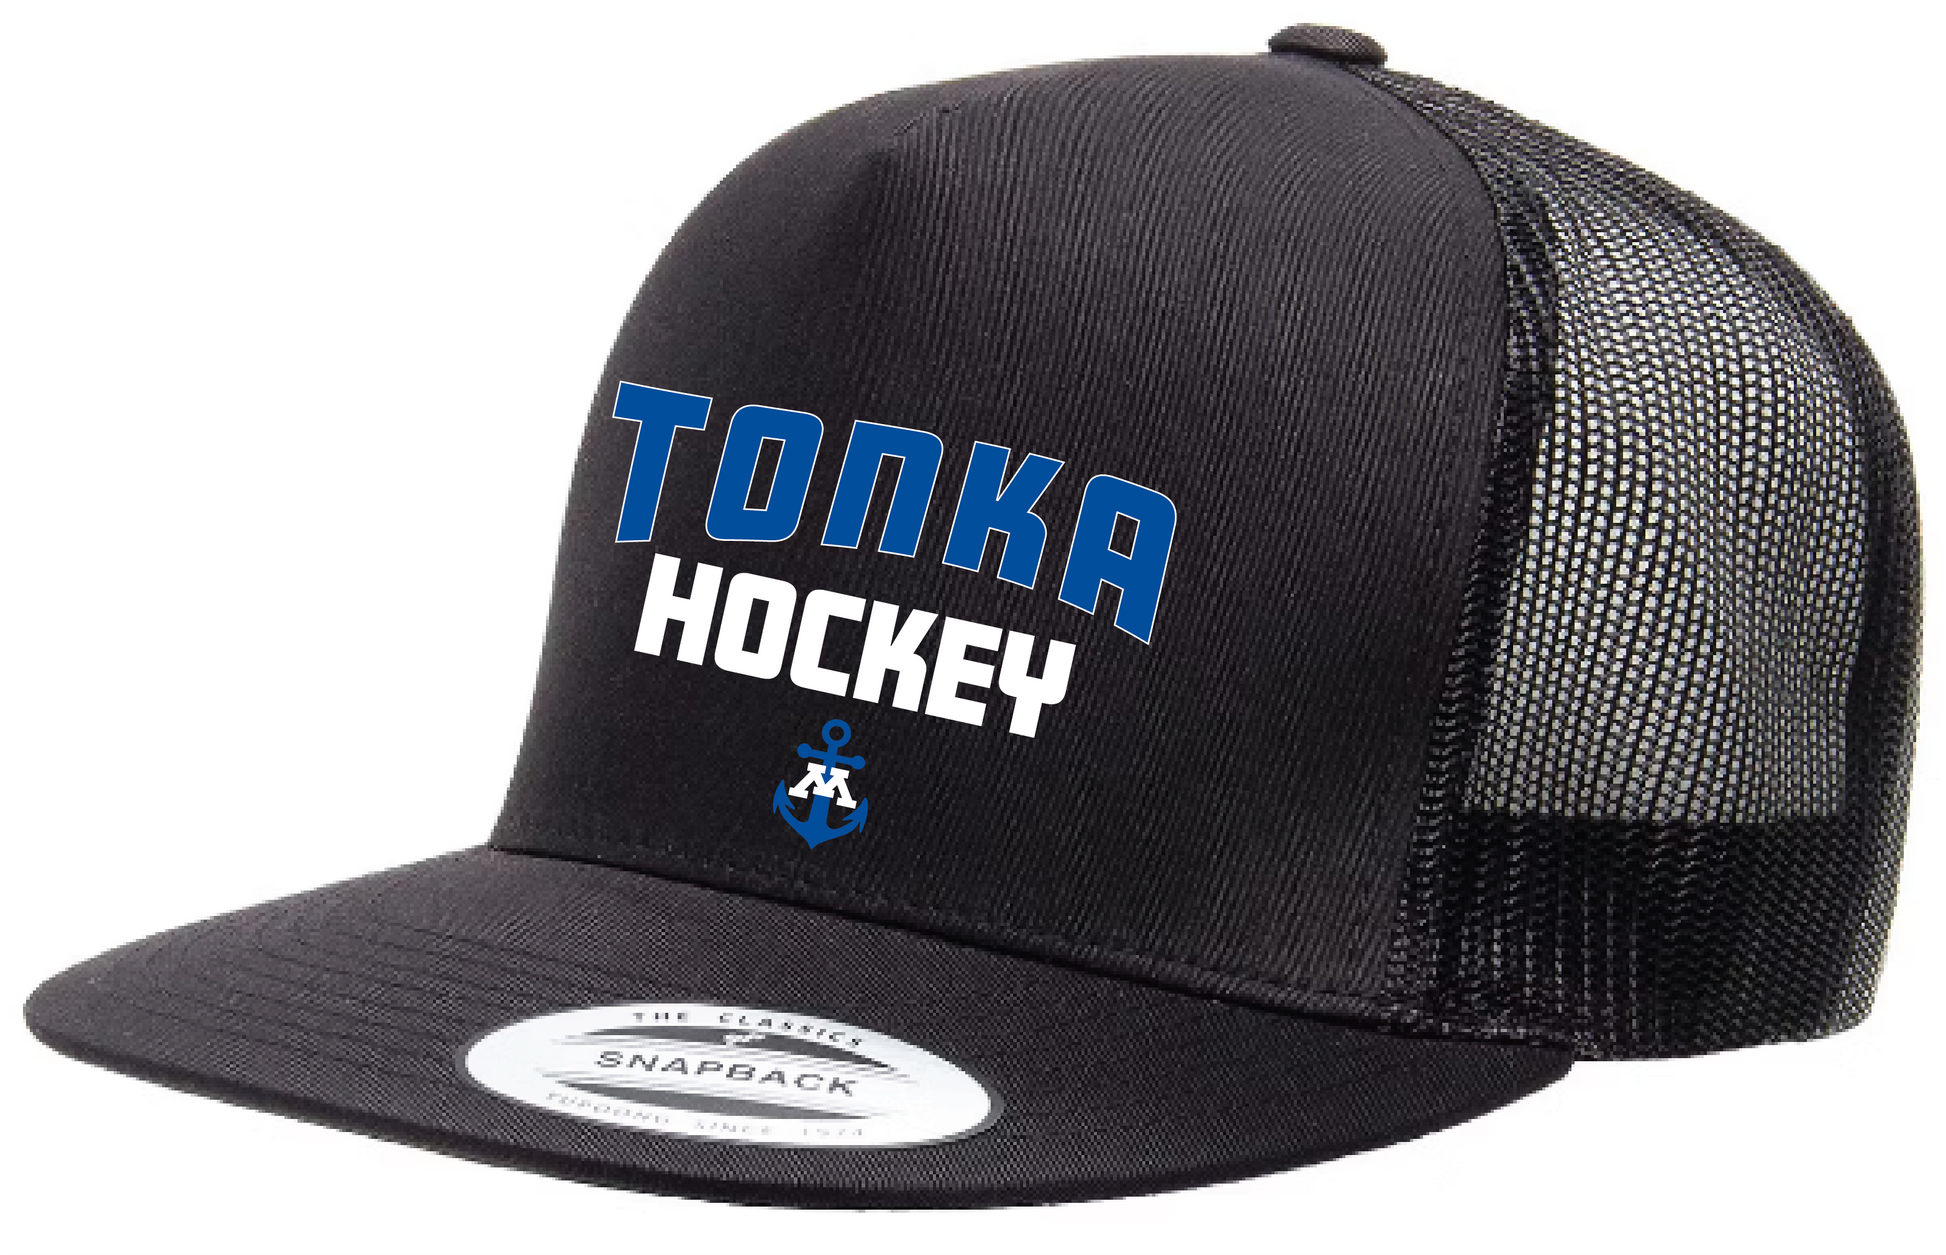 Tonka Hockey Small Anchor Black/Black